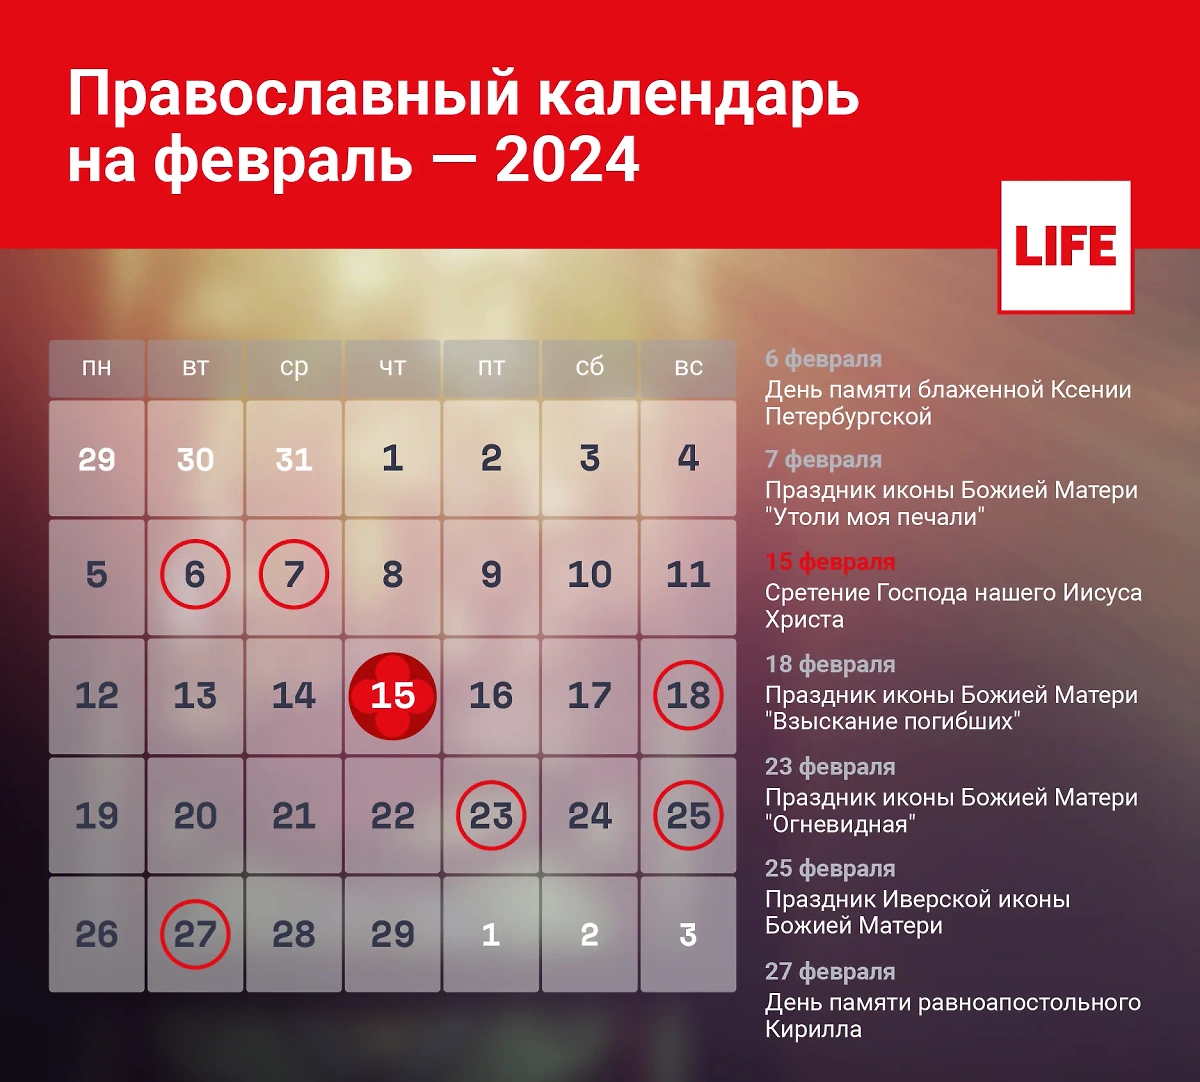 Какой сегодня церковный праздник? Православный календарь на февраль 2024 года. Инфографика © LIFE 